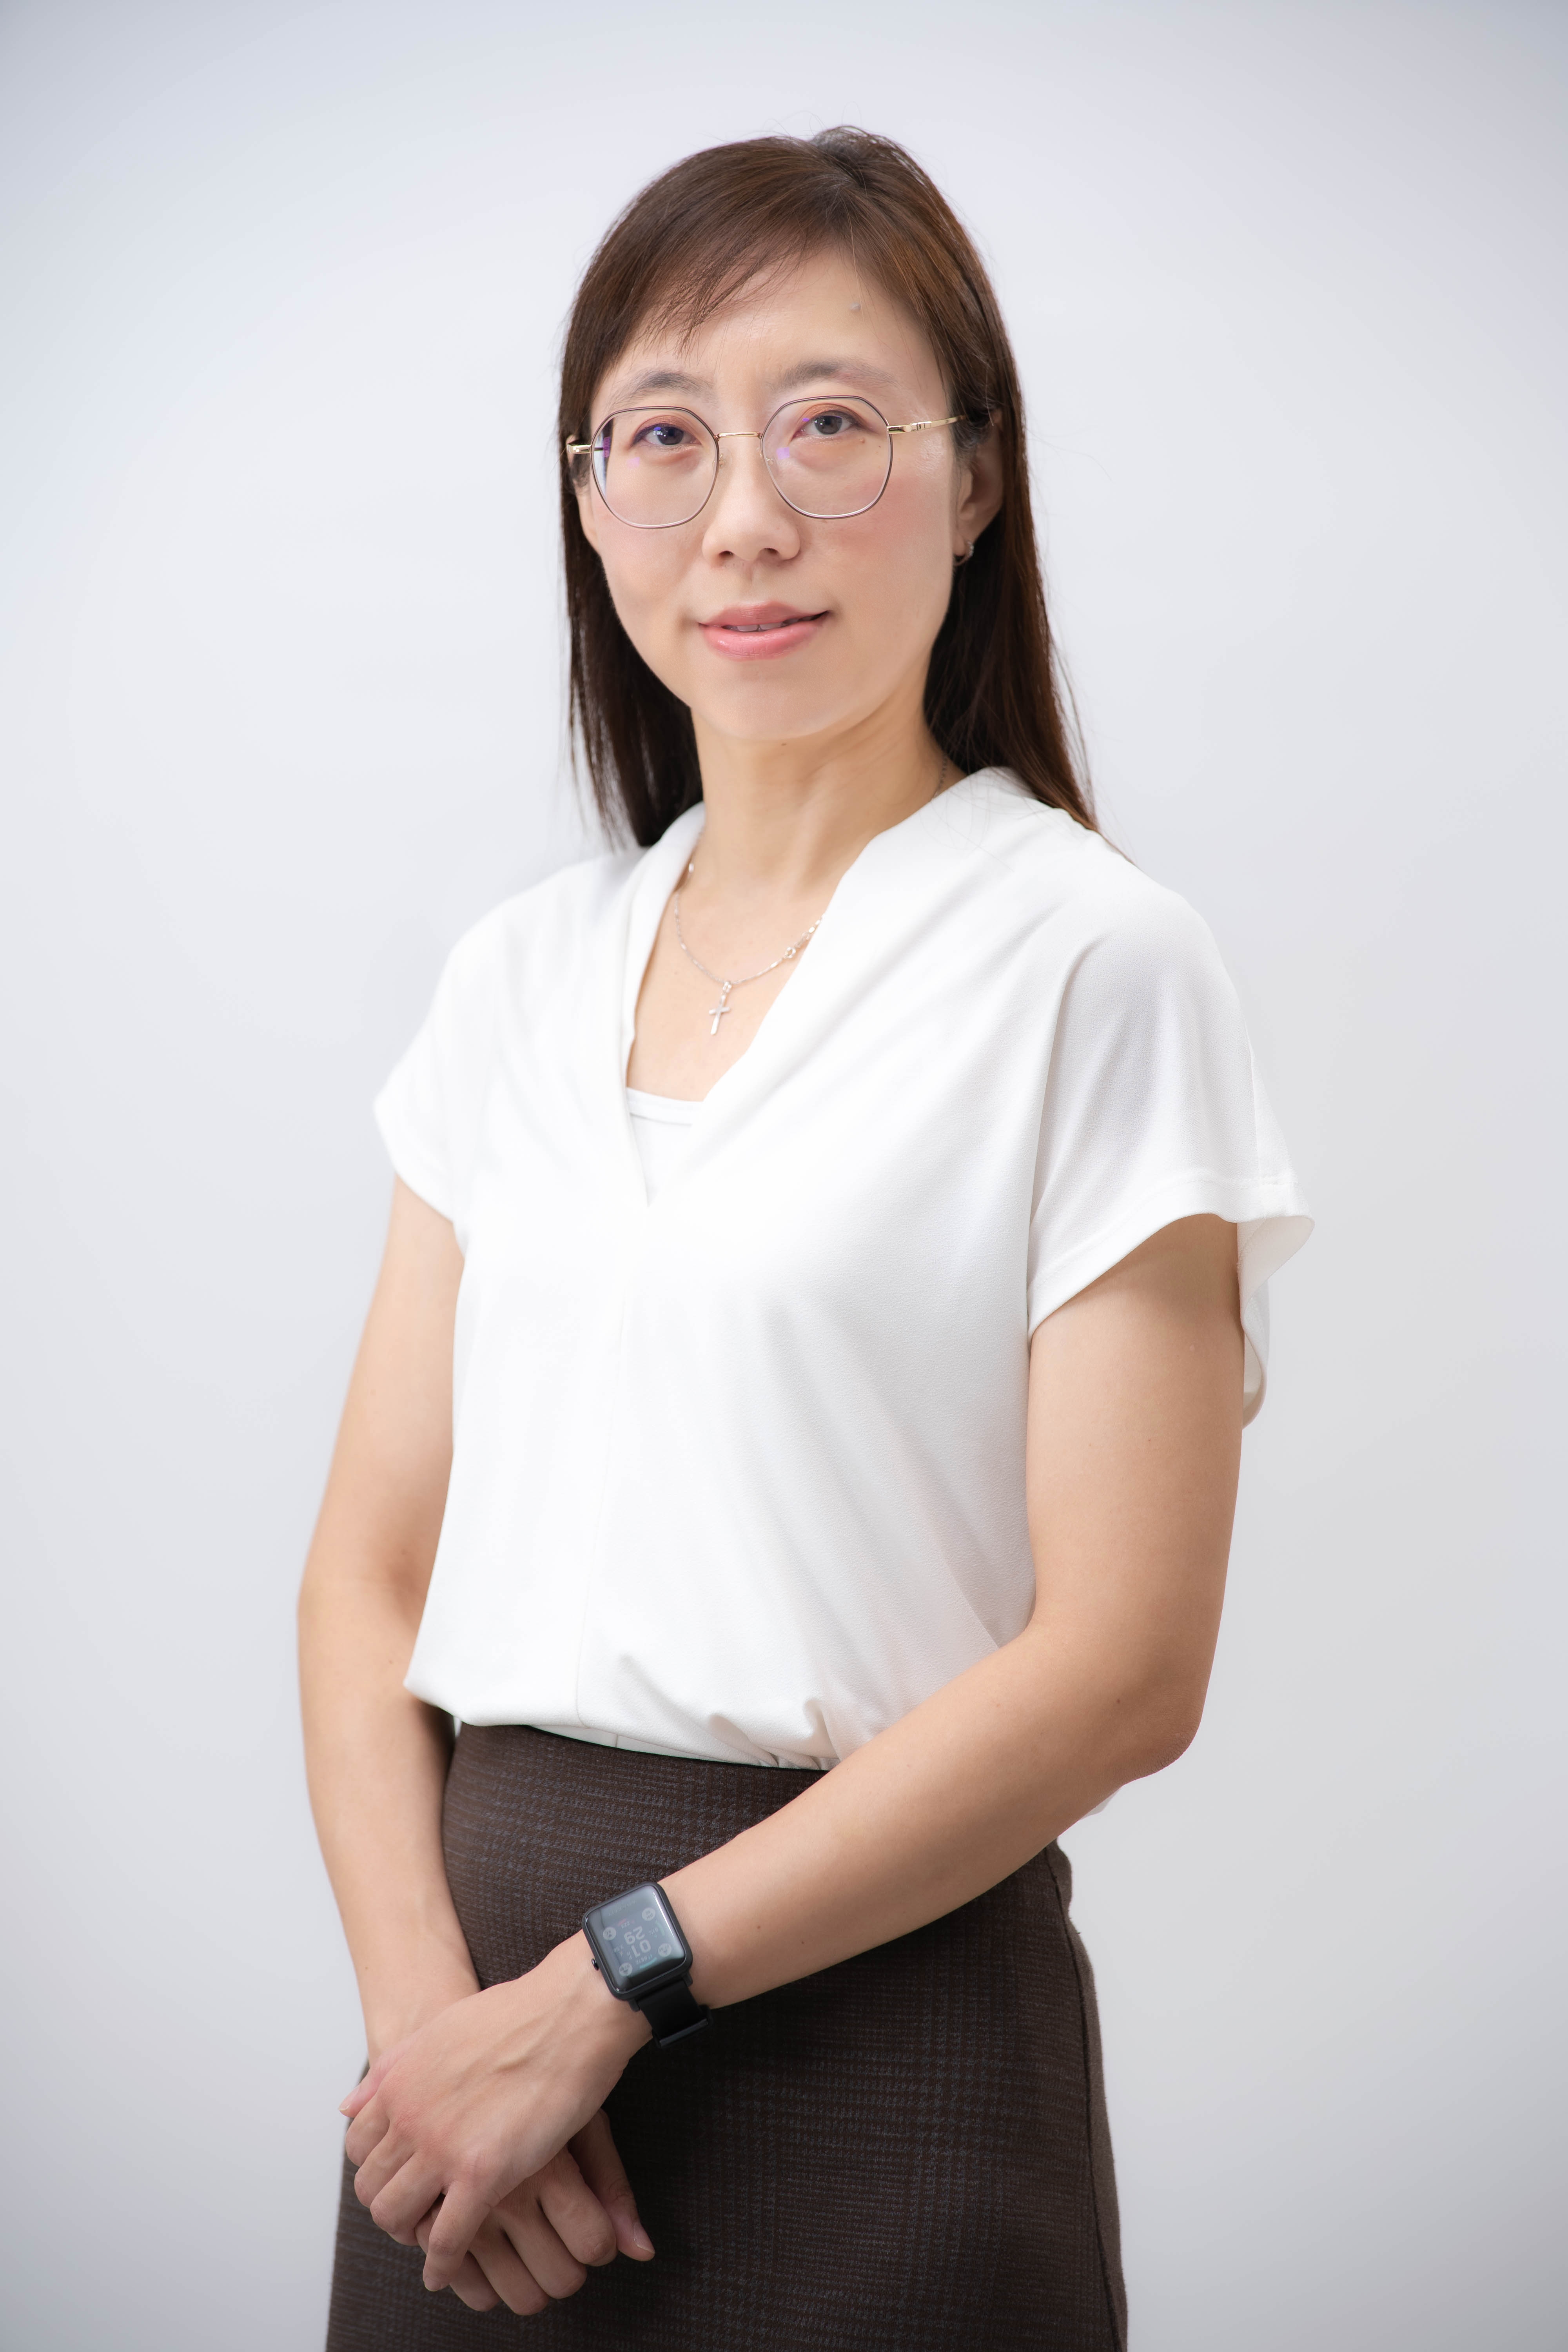 Dr.Elaine Hui BeenNg